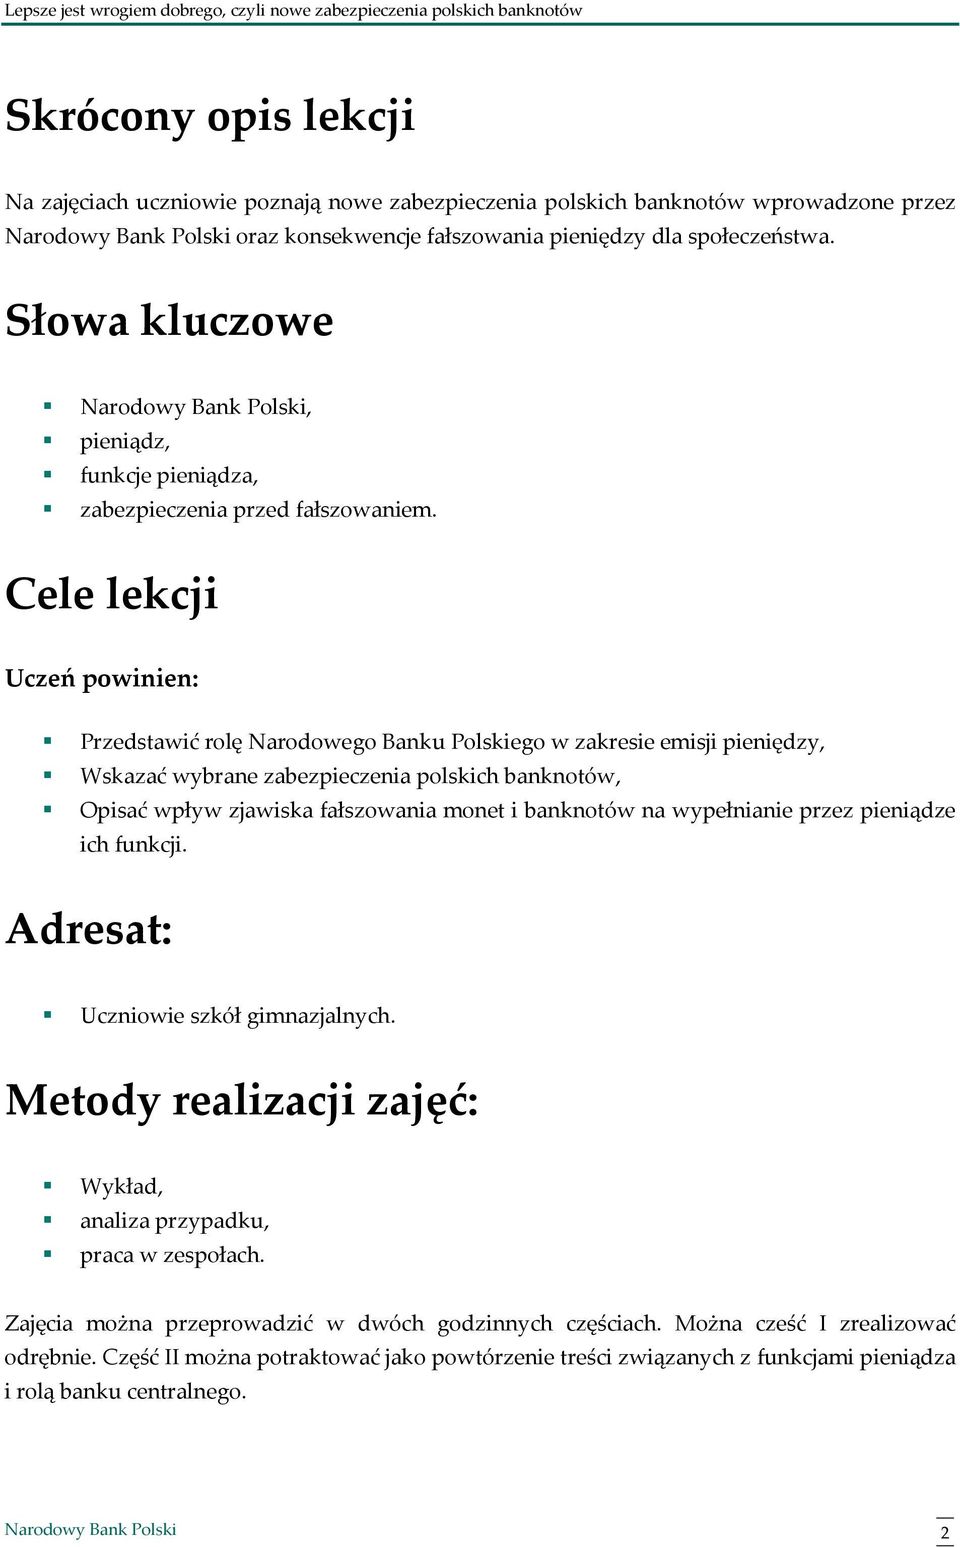 Cele lekcji Uczeń powinien: Przedstawić rolę Narodowego Banku Polskiego w zakresie emisji pieniędzy, Wskazać wybrane zabezpieczenia polskich banknotów, Opisać wpływ zjawiska fałszowania monet i